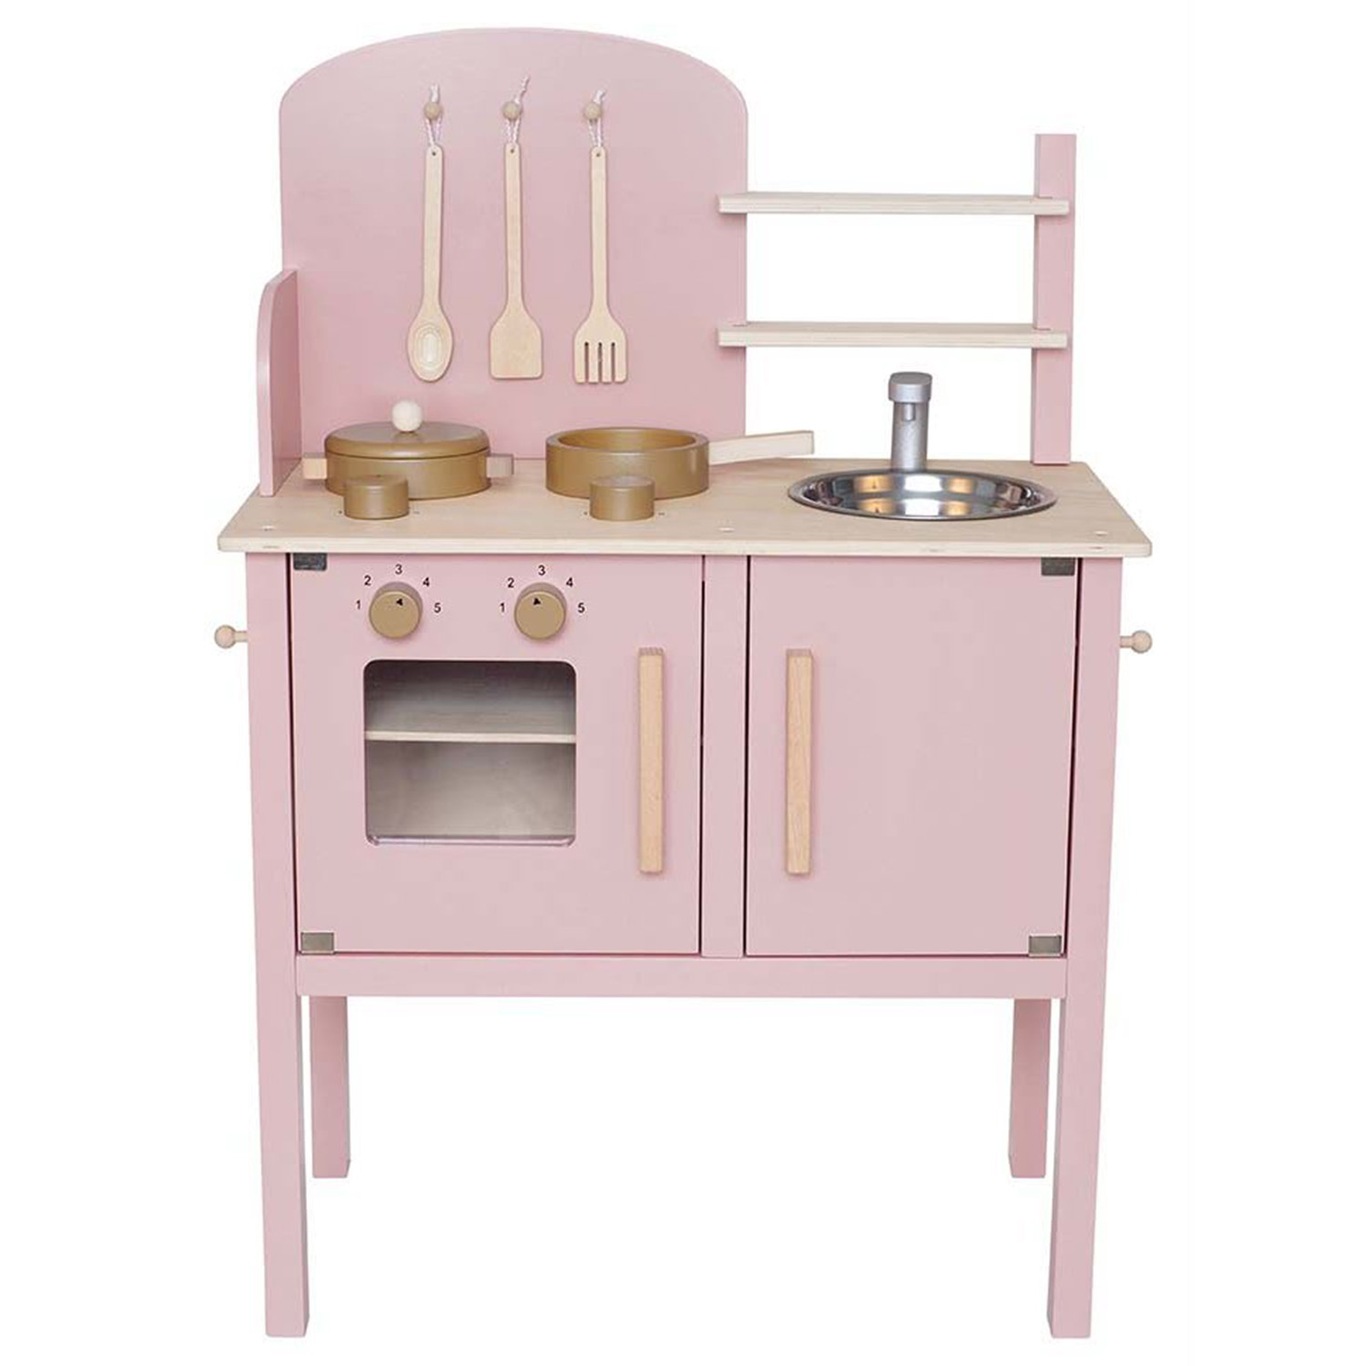 Toy kitchen, Pink